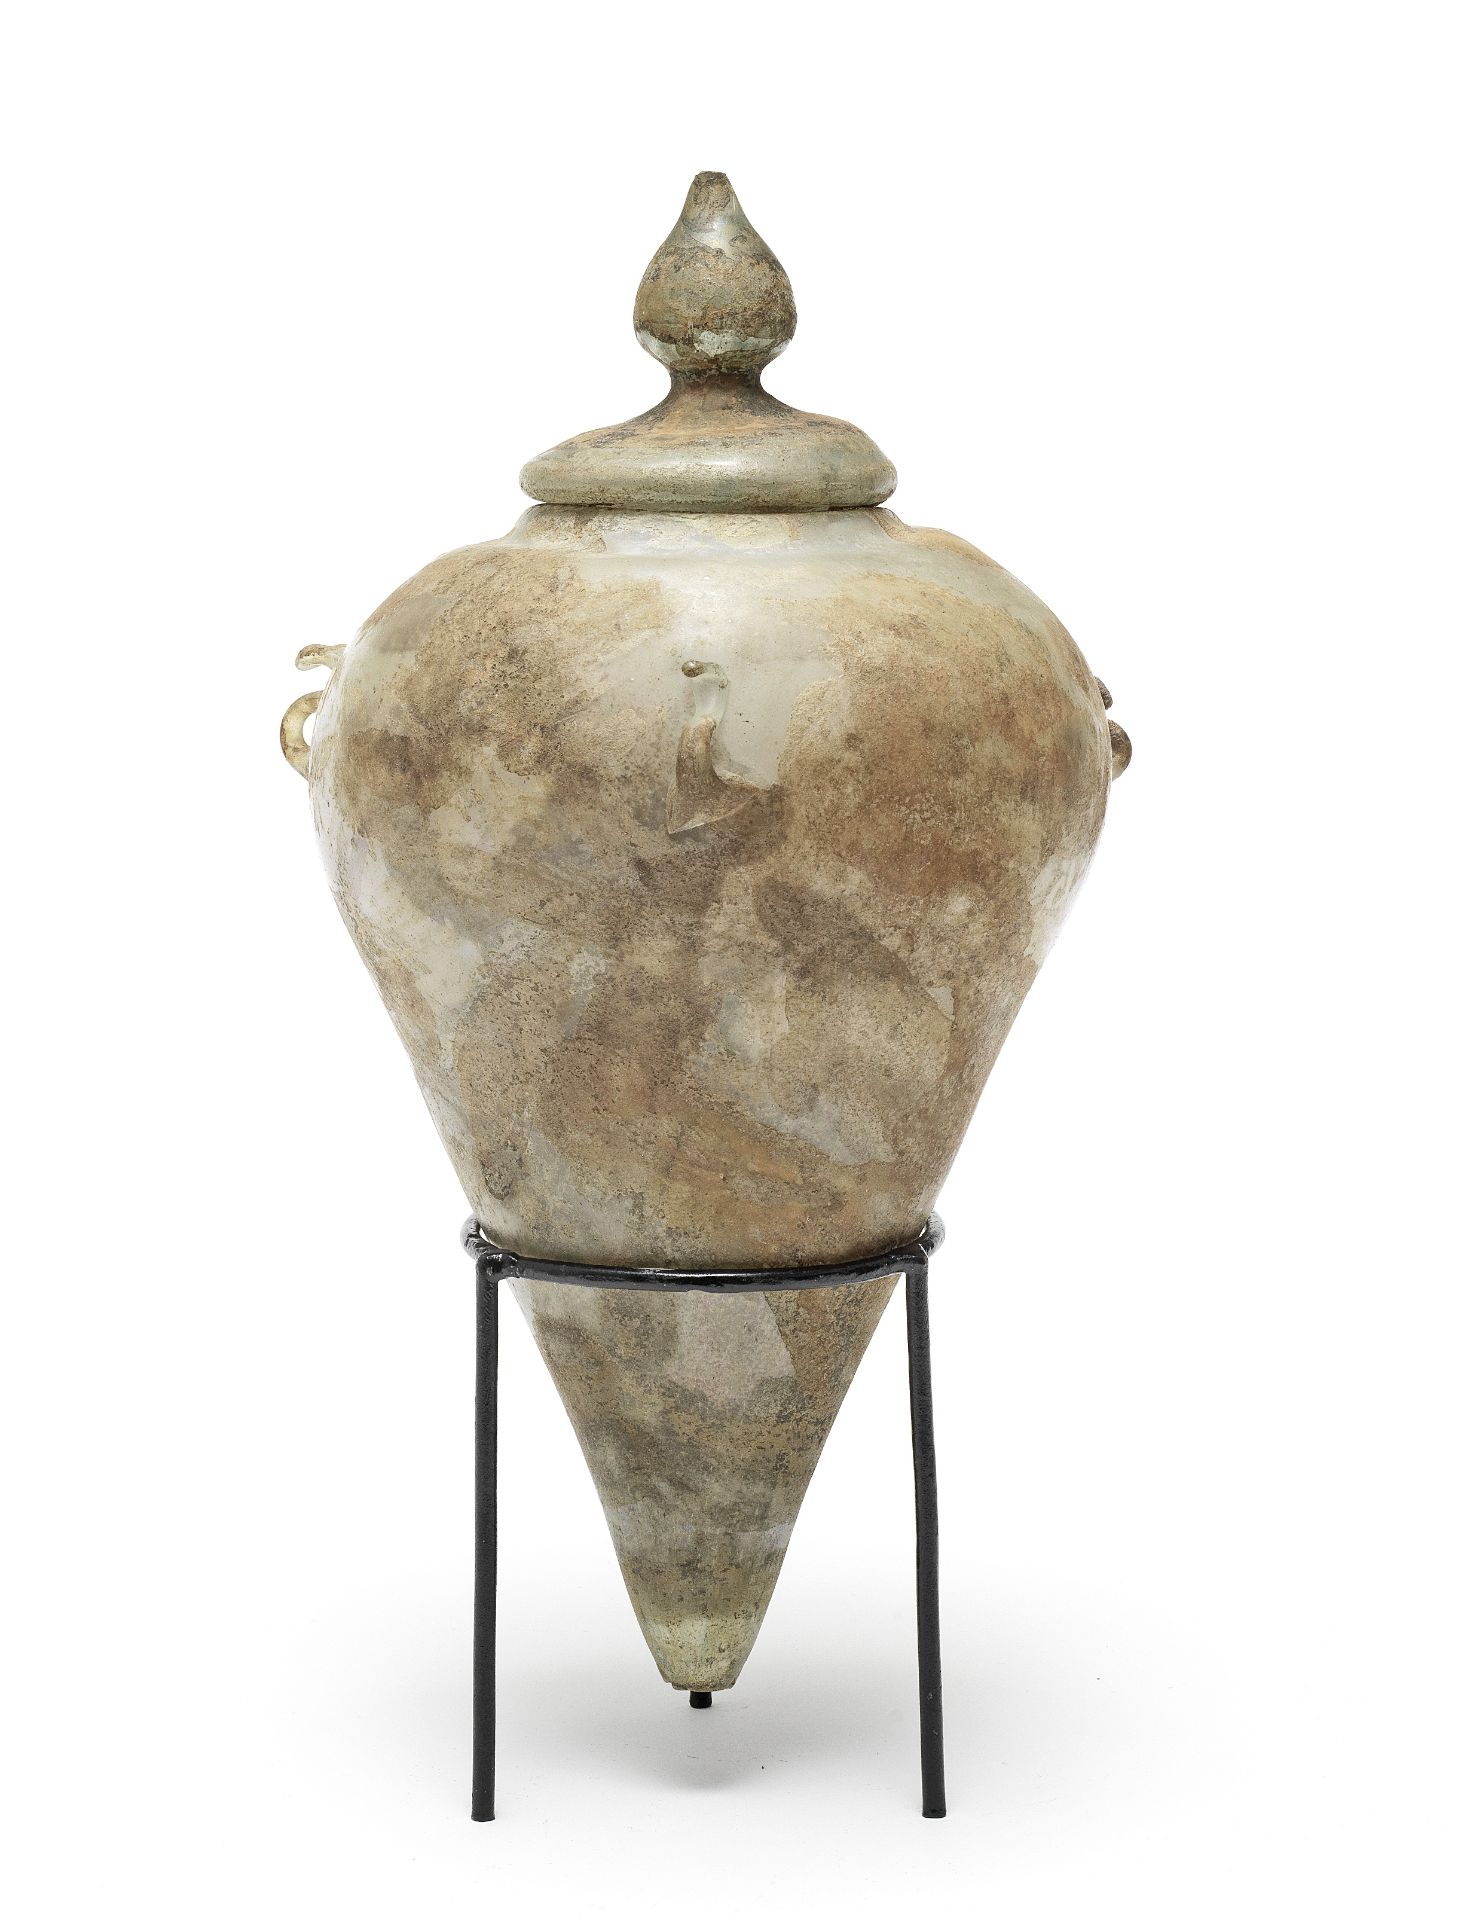 A Roman green glass lidded cinerary urn